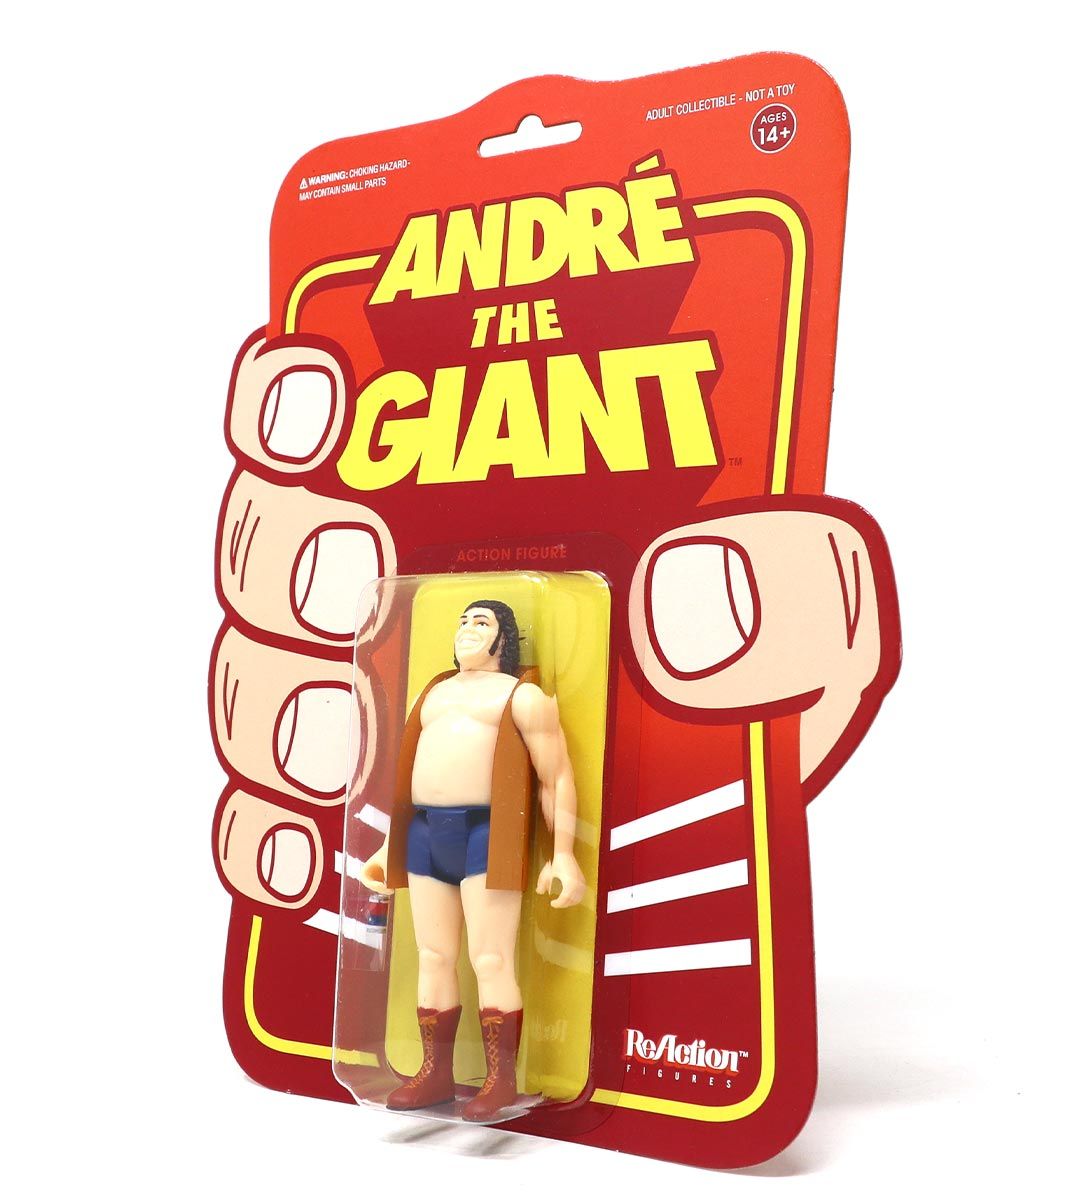 André the Giant - veste - ReAction figure